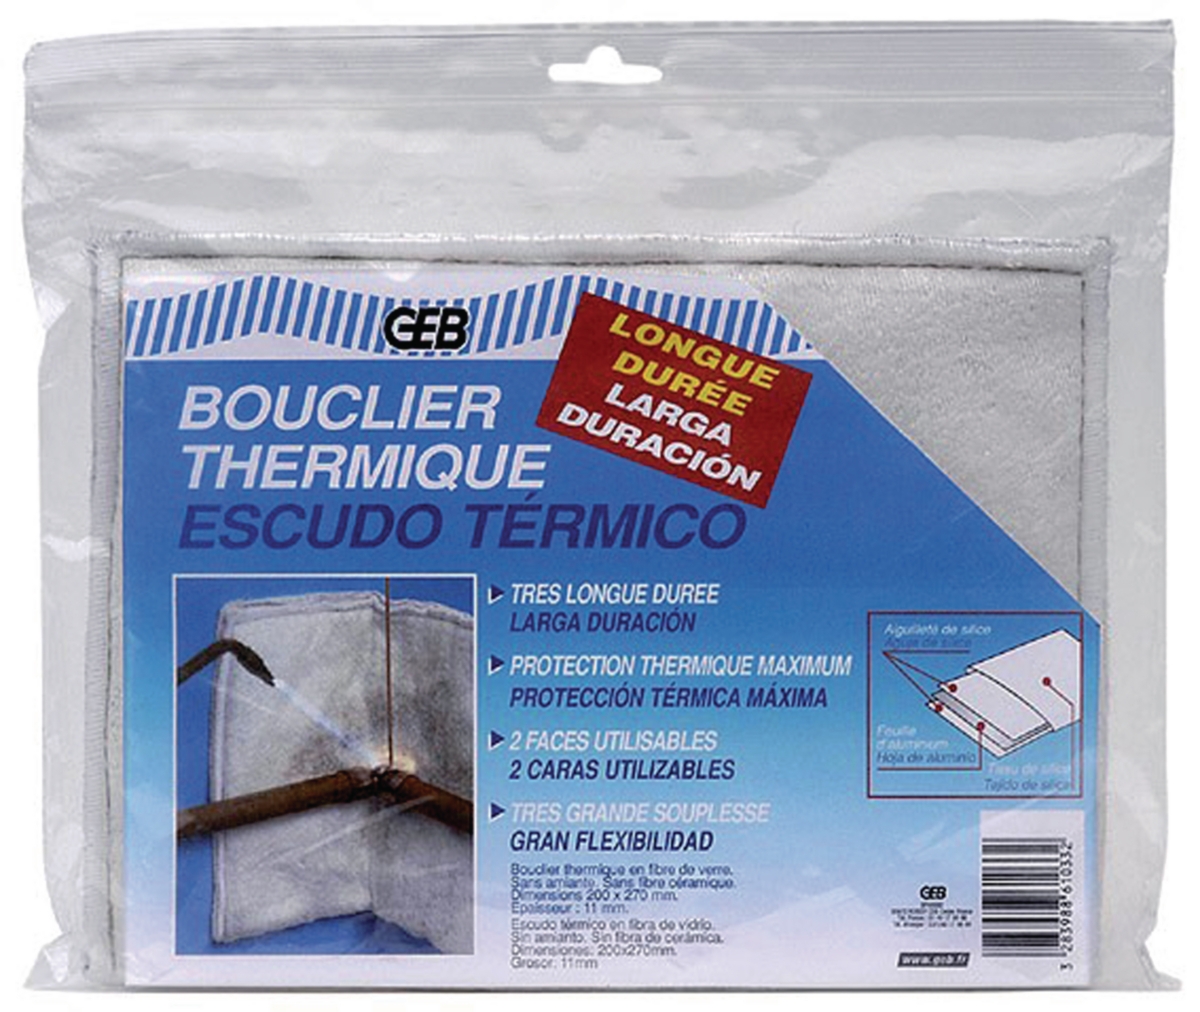 Bouclier thermique pour soudure - Plaque 20 x 27 cm - Geb - ..